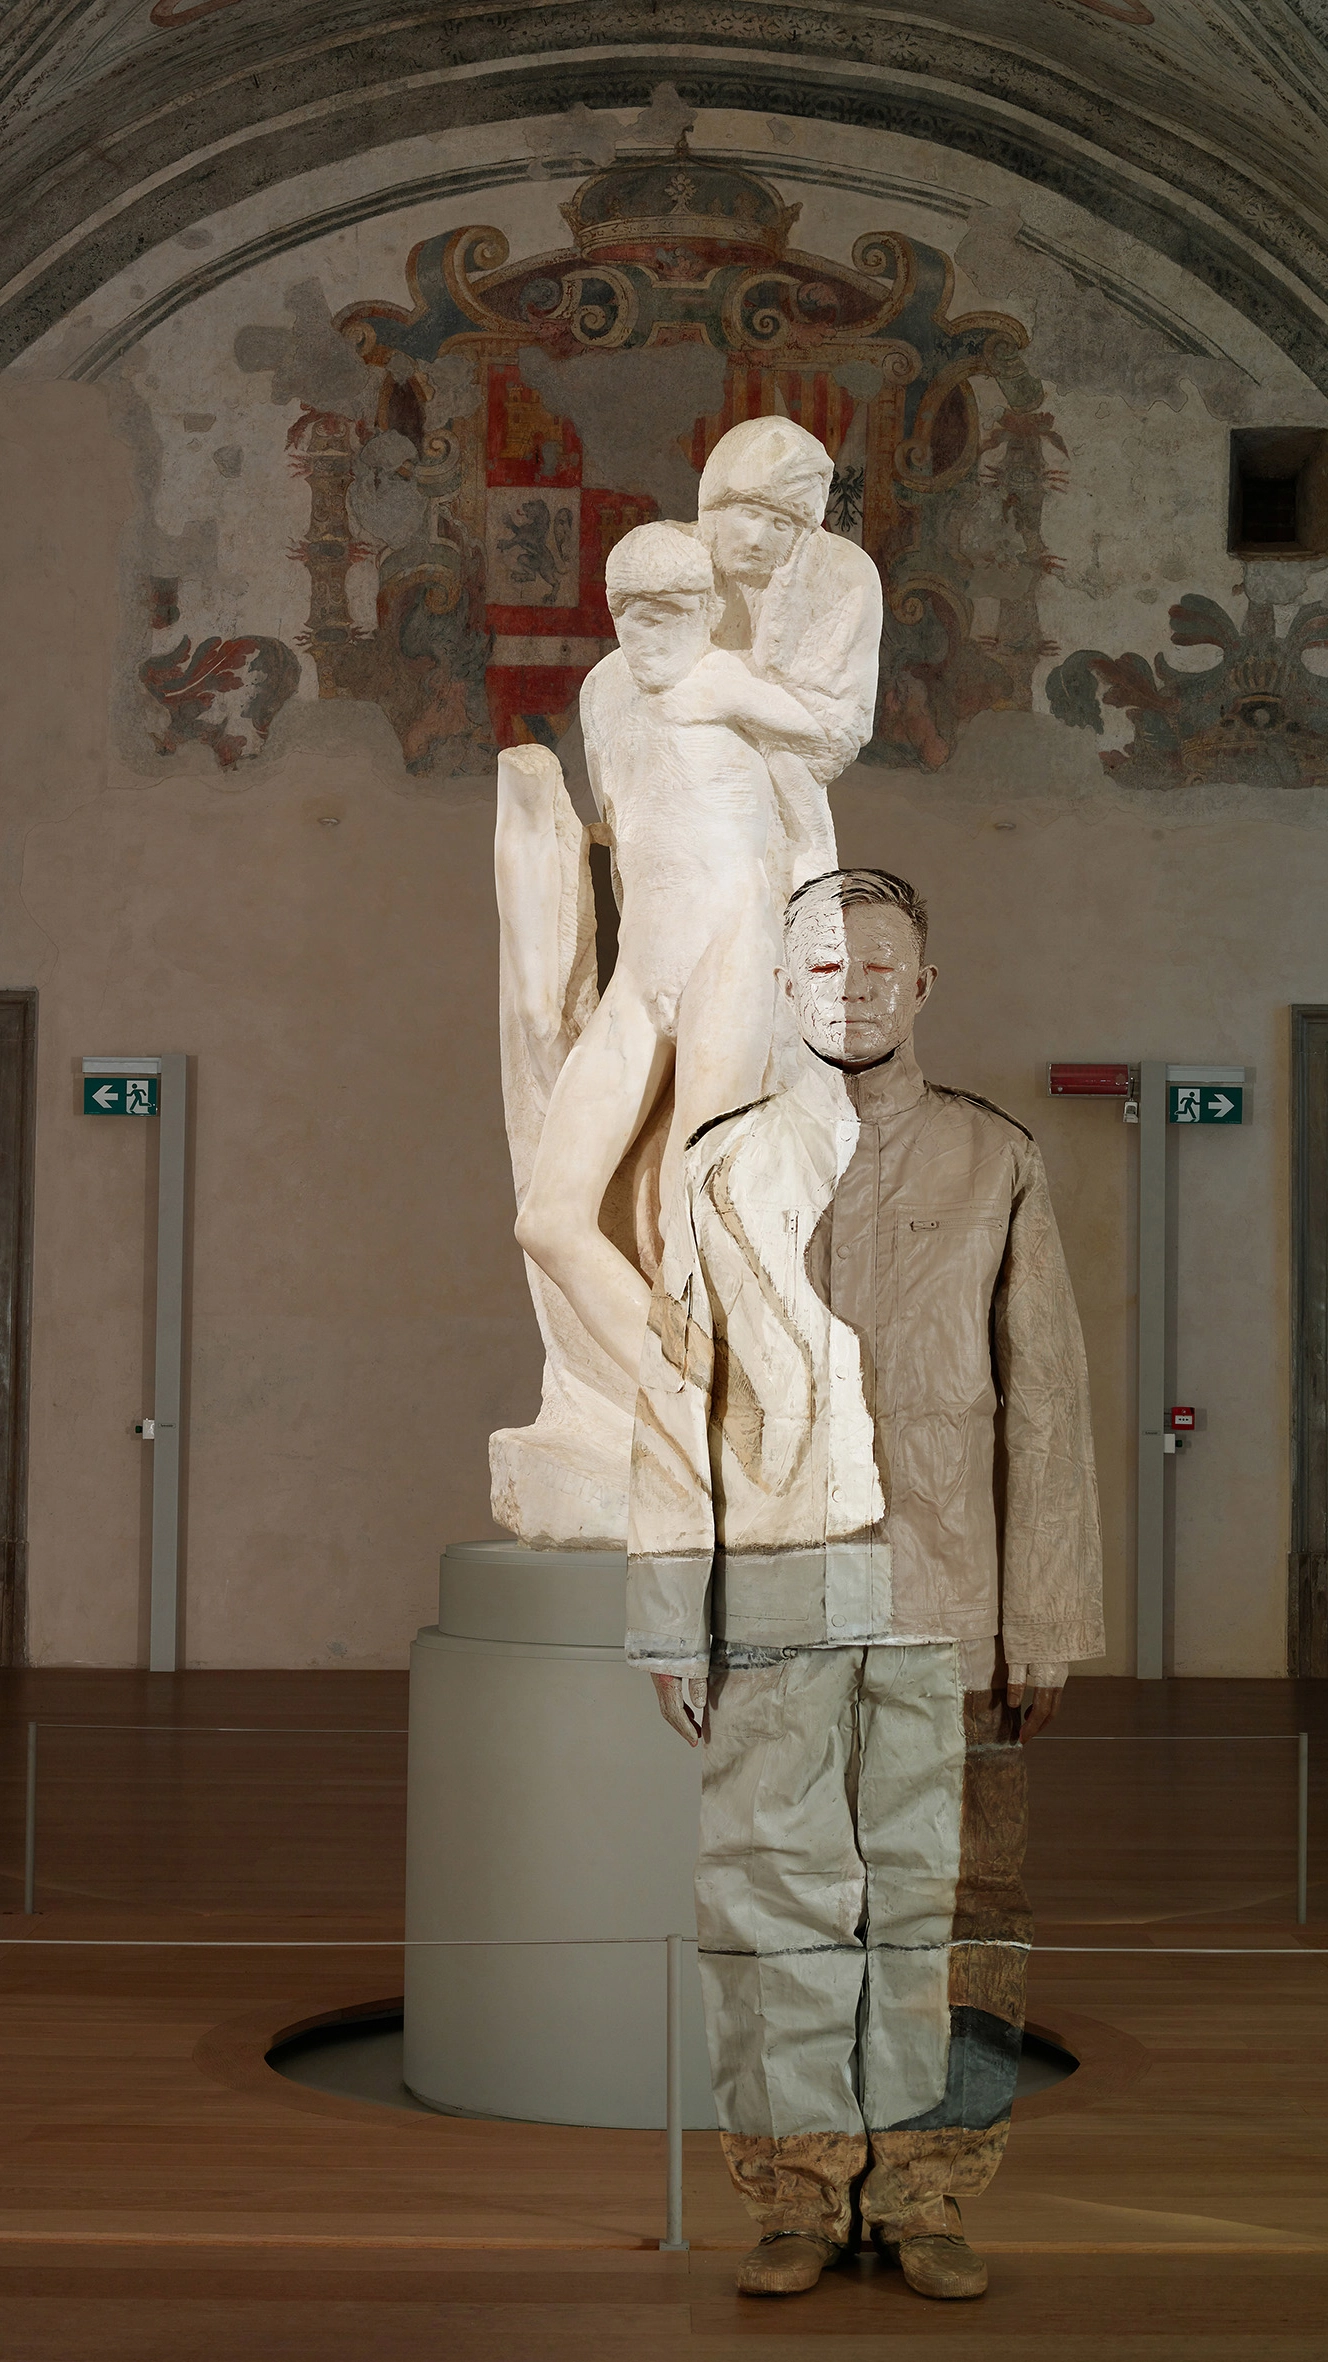 Liu Bolin, Pietà di Michelangelo, Castello Sforzesco, Milano, 2019. Courtesy: Galleria Gaburro.